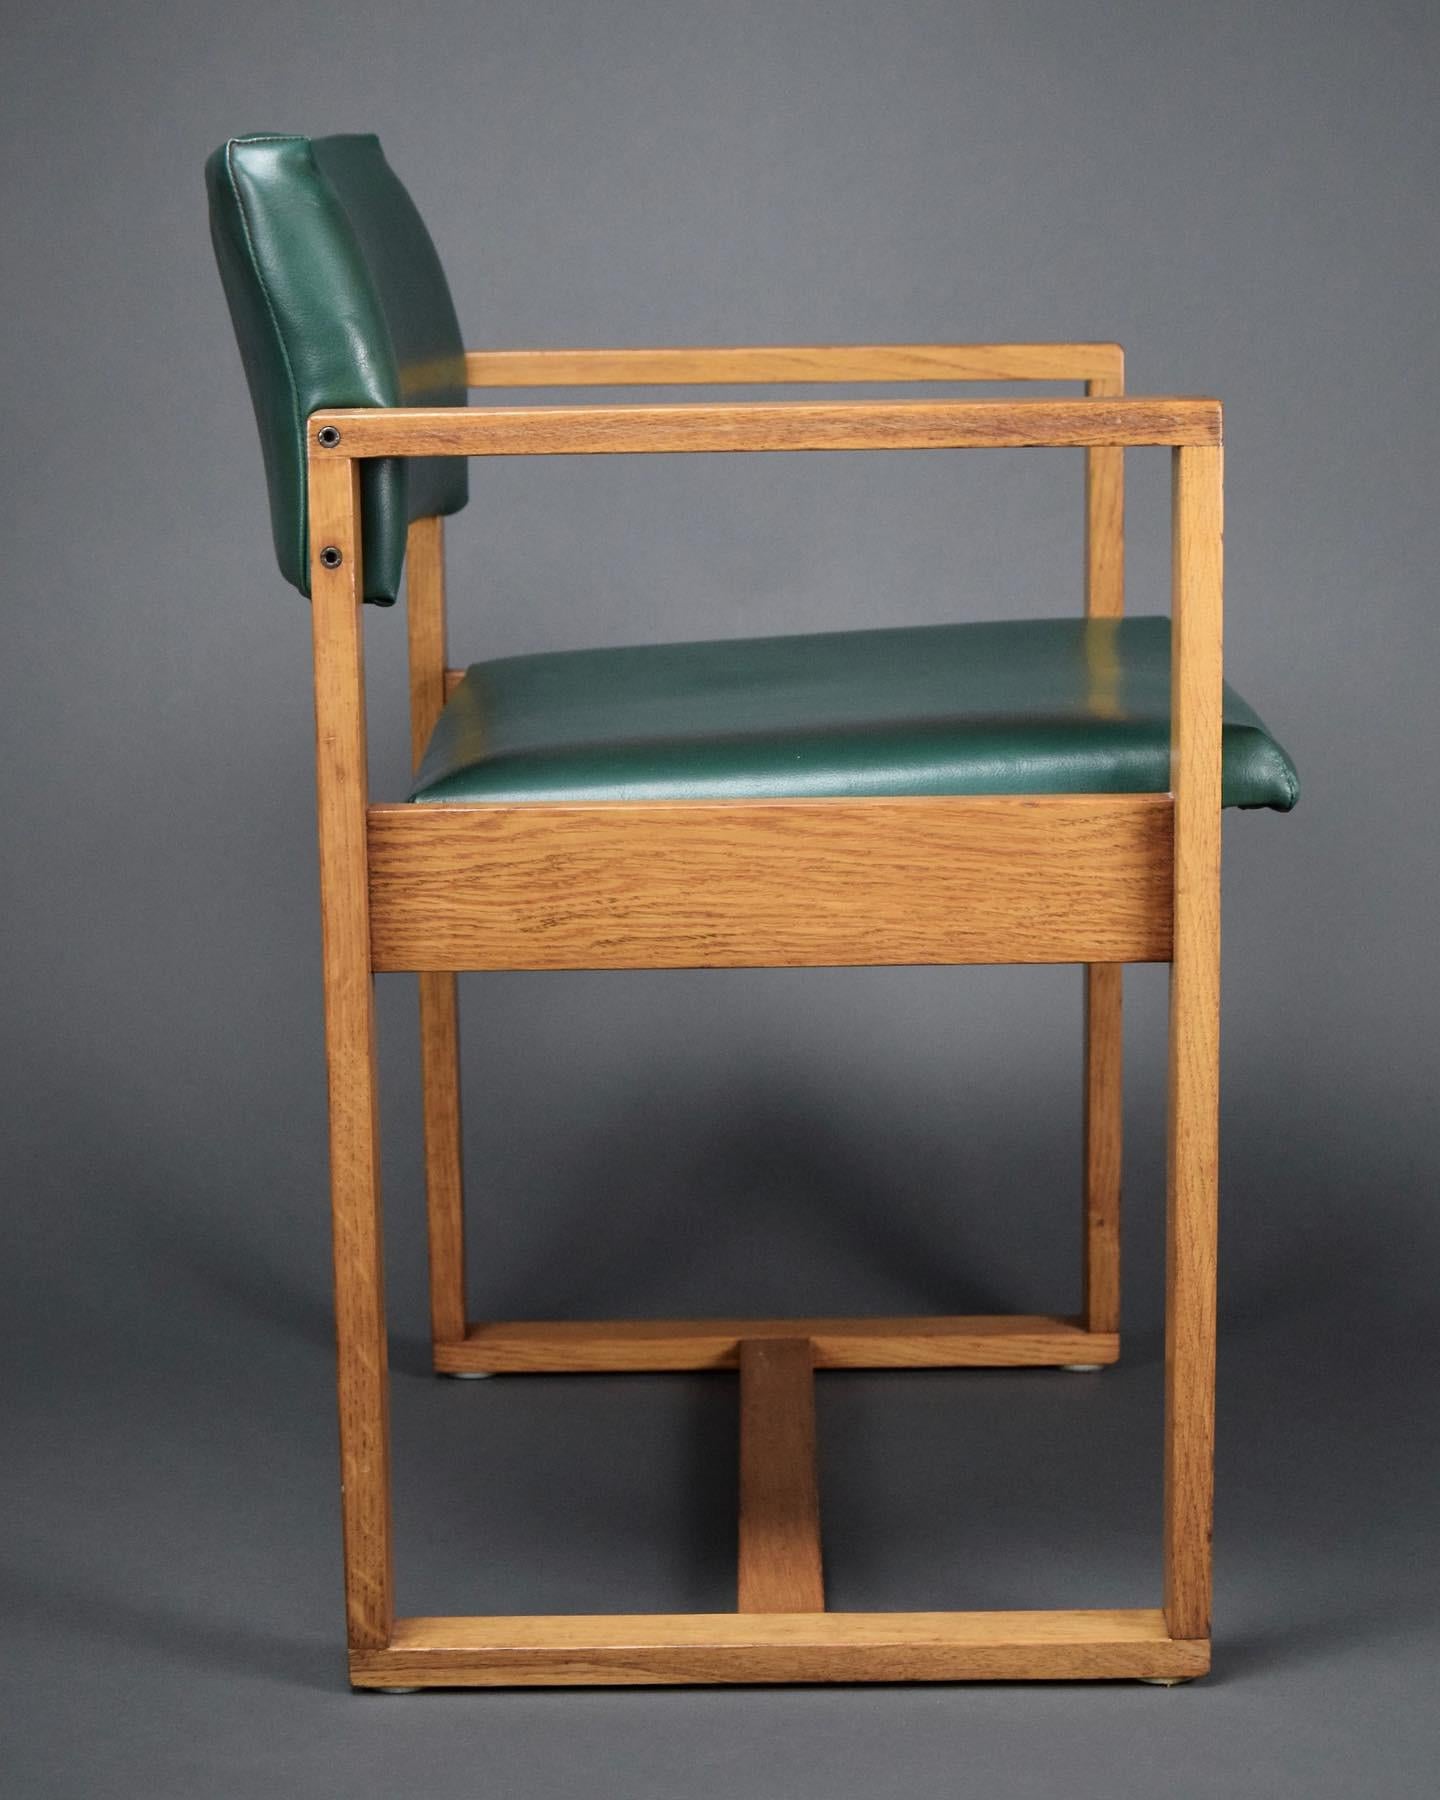 Fauteuil en simili-cuir vert bouteille, de style moderne du milieu du siècle, créé par Ate van Apeldoorn pour Woodwork Hattem, Pays-Bas. 
Cette pièce élégante et raffinée peut être utilisée comme fauteuil ou comme chaise de bureau.
Le fondateur de